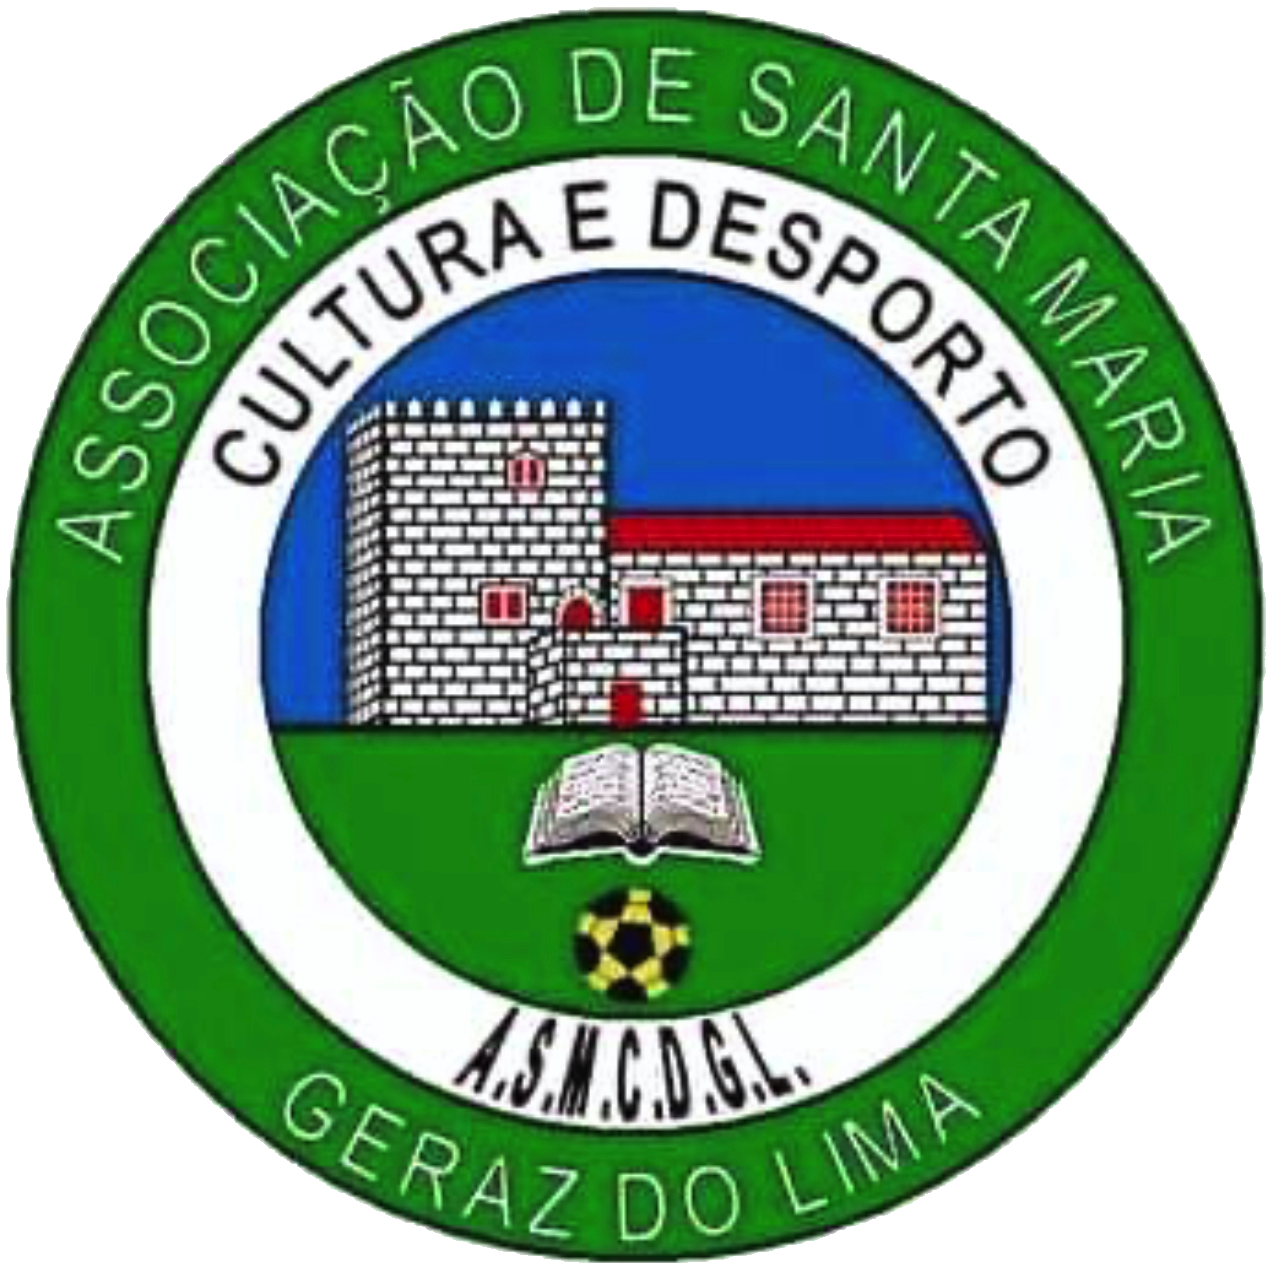 A.S.M.C.D. Geraz do Lima